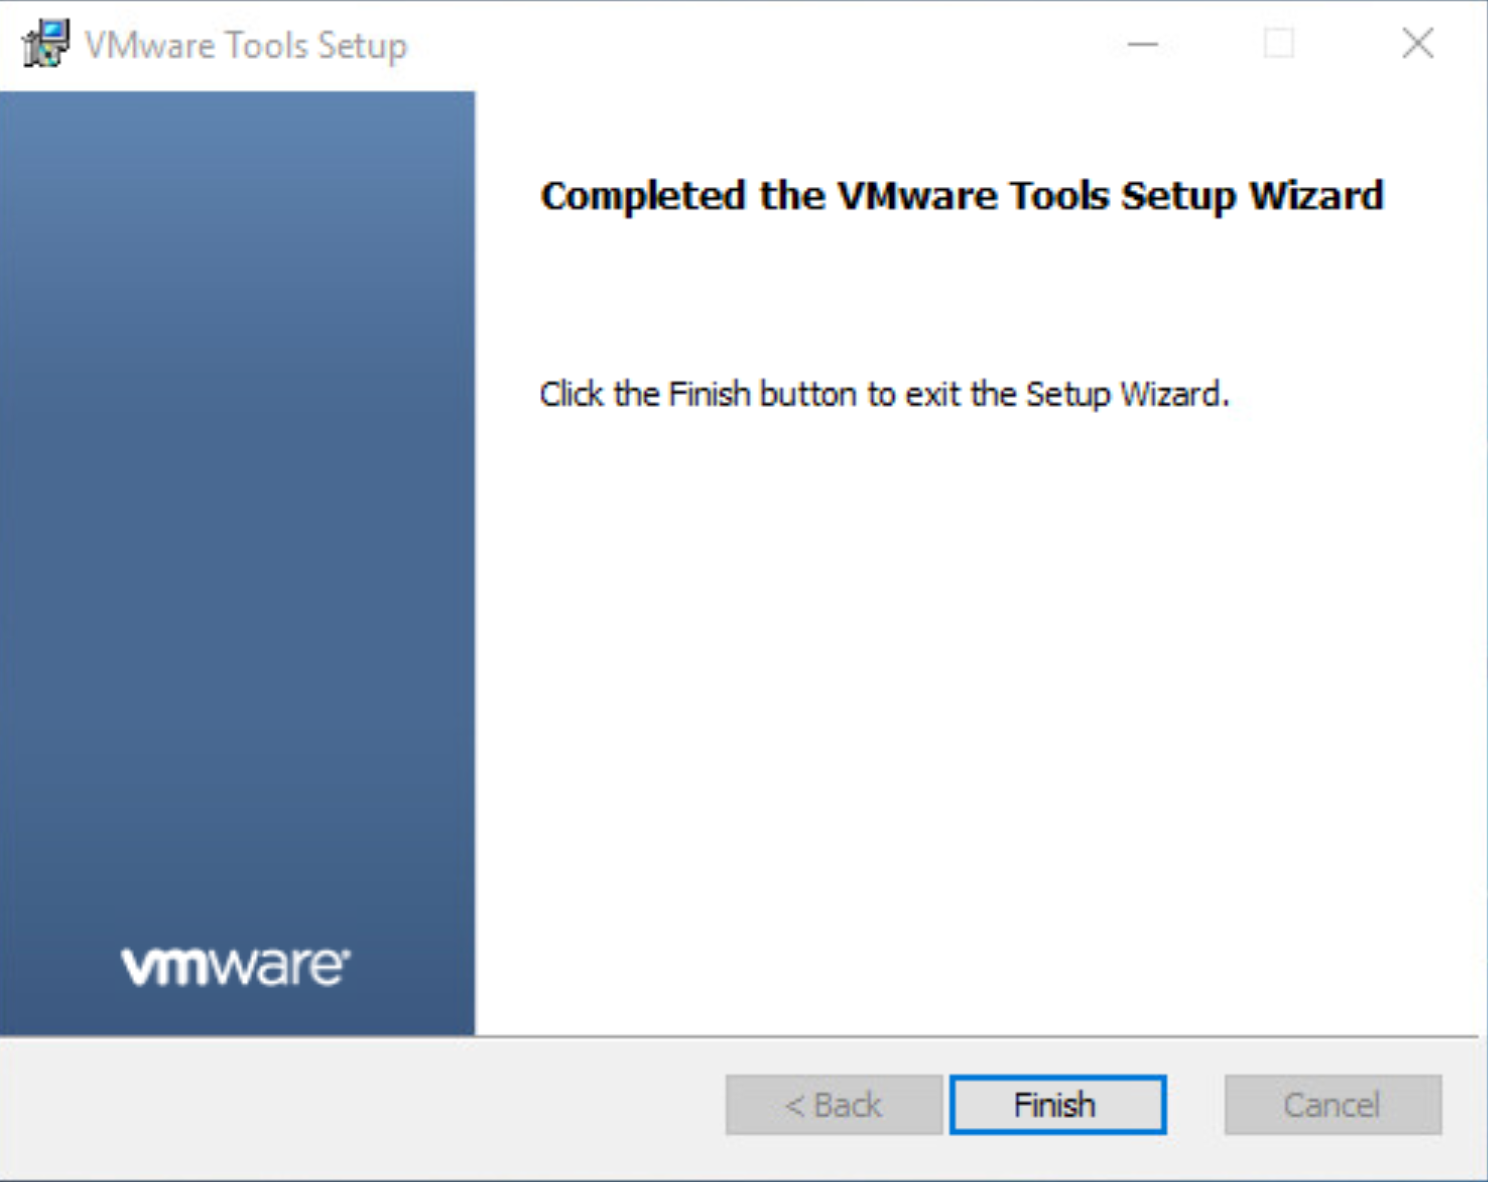 Schermopname van het installatievenster van VMware Tools waarin wordt weergegeven dat de installatie is voltooid.